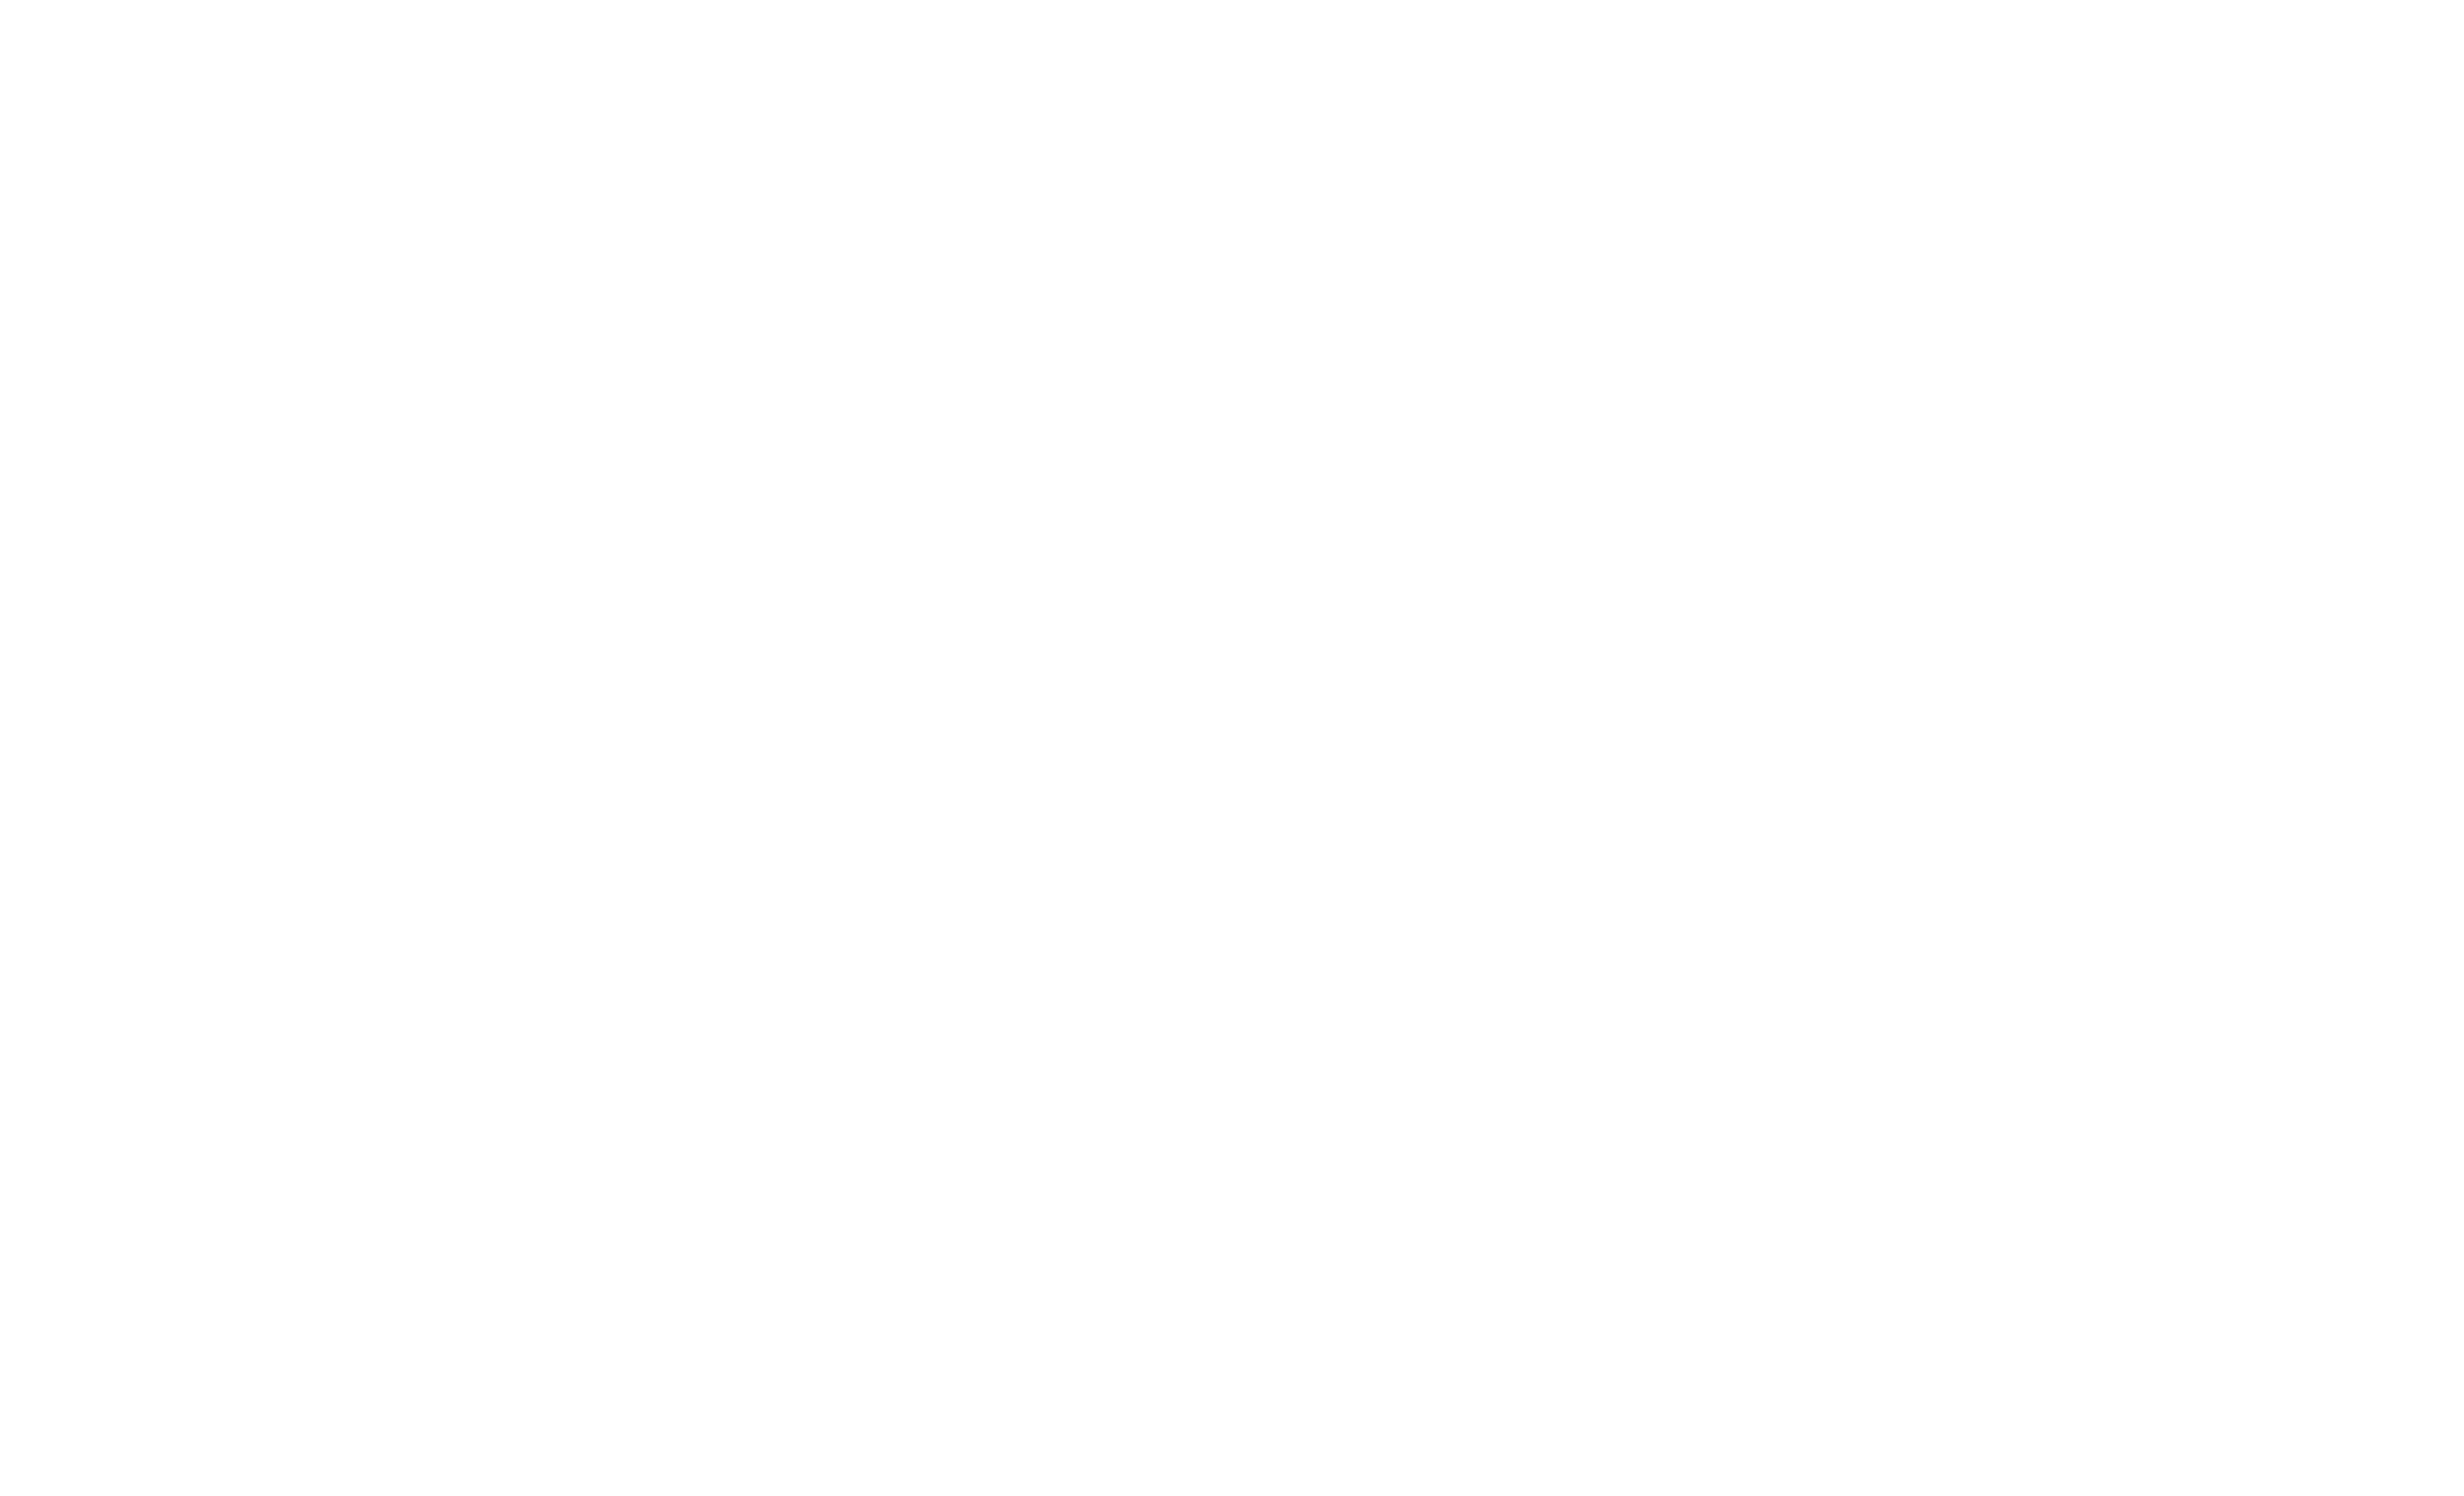 Tech.Rocks